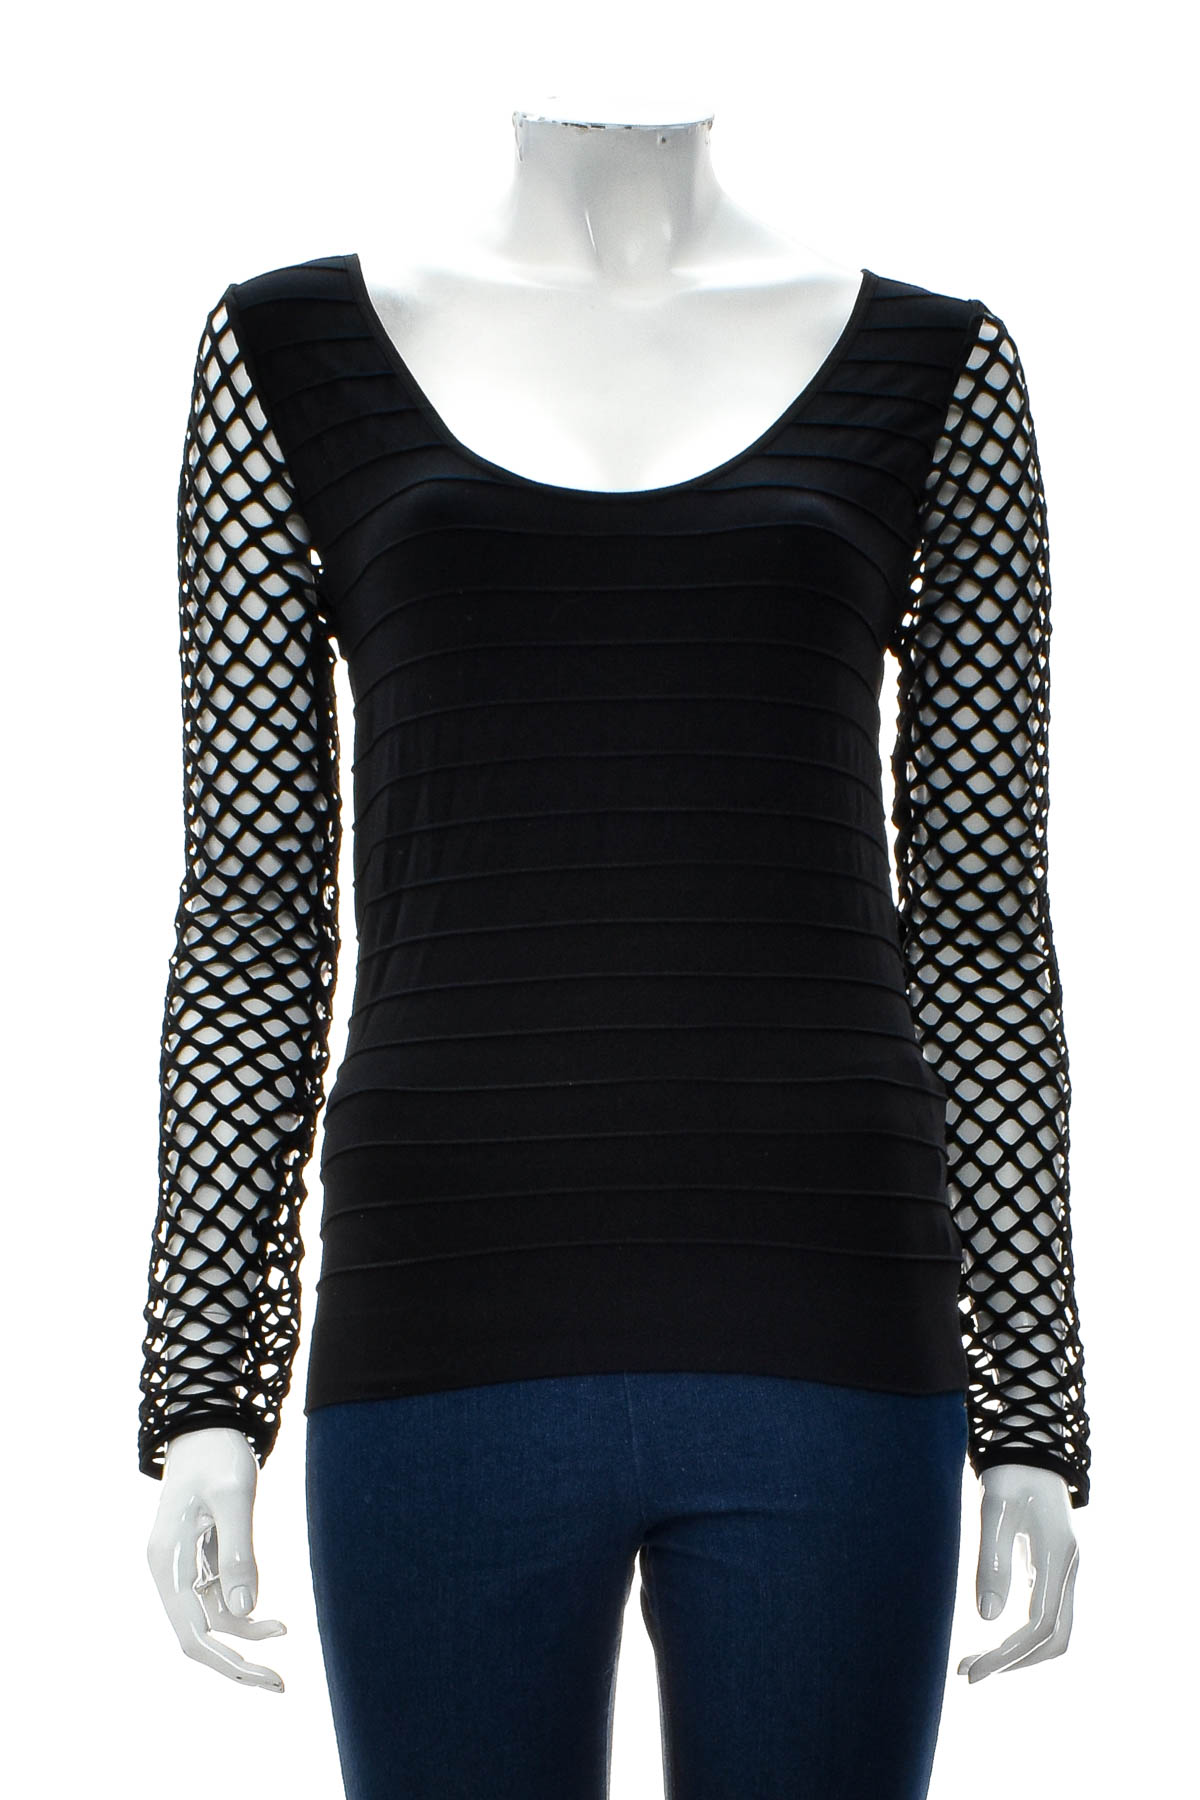 Women's blouse - LivCo Corsetti Fashion - 0